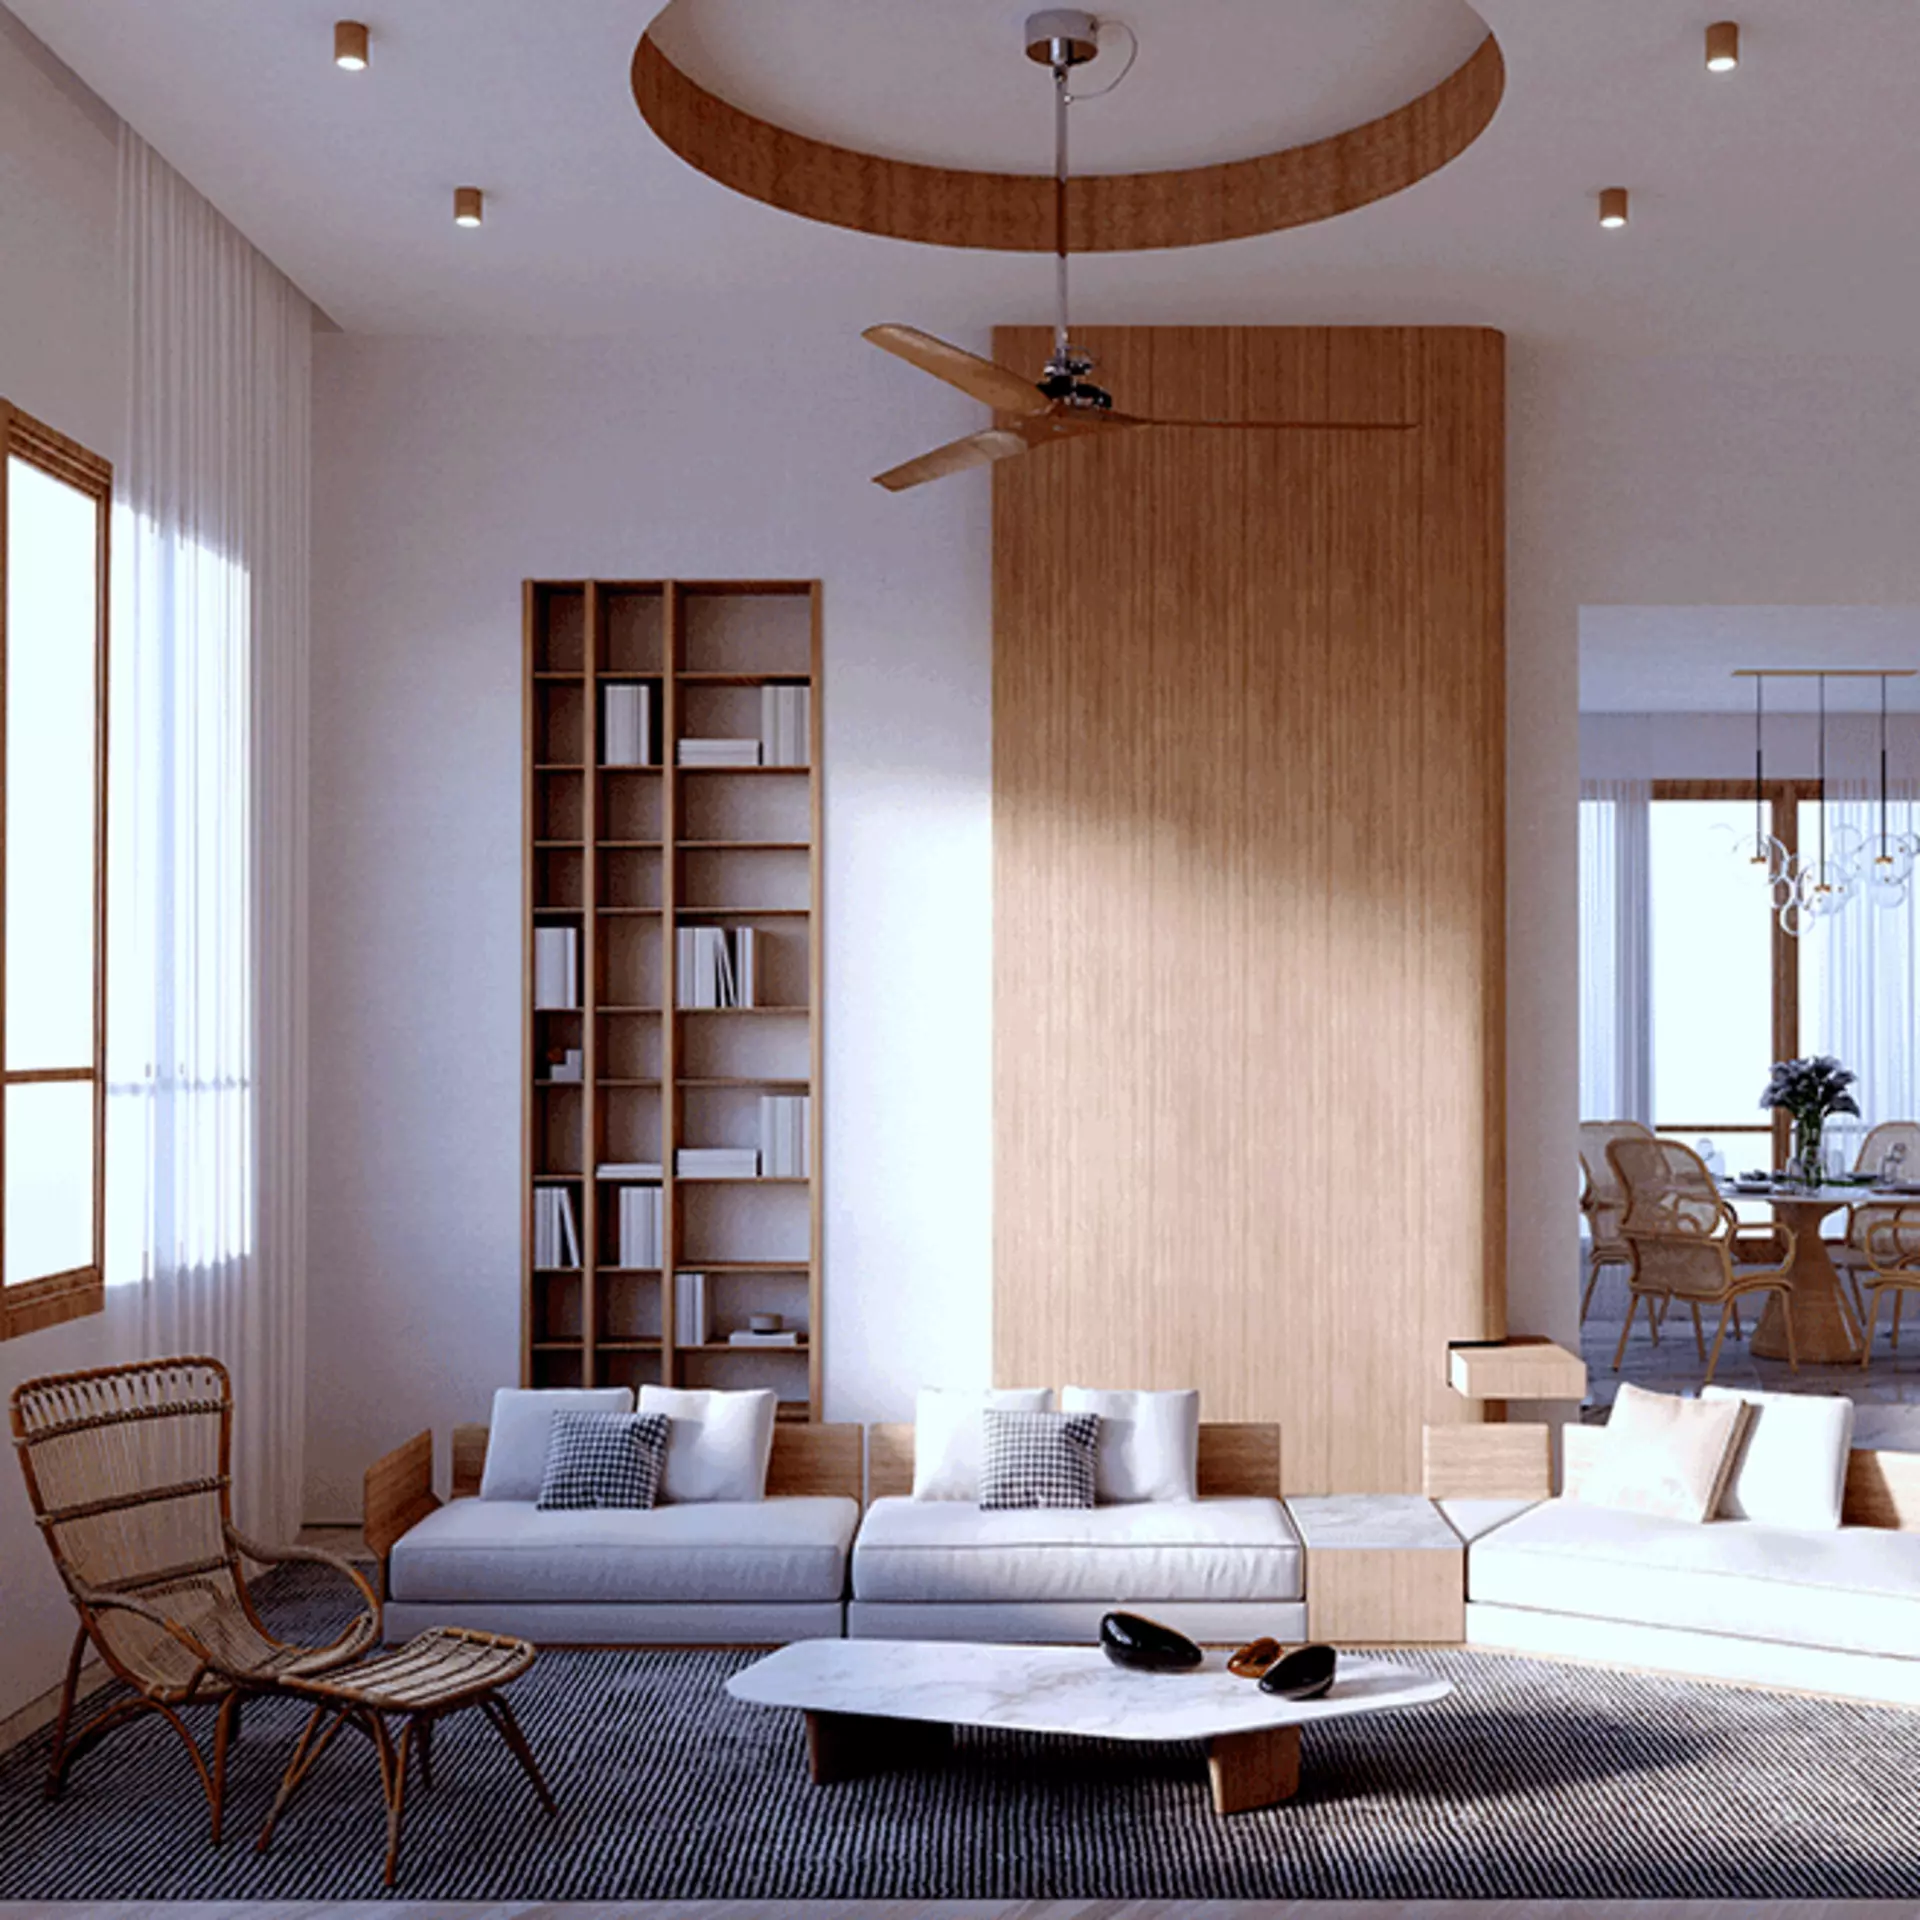 Wohnzimmer mit Sofa und Regal, in den Farben Beige, Braun und Weiß